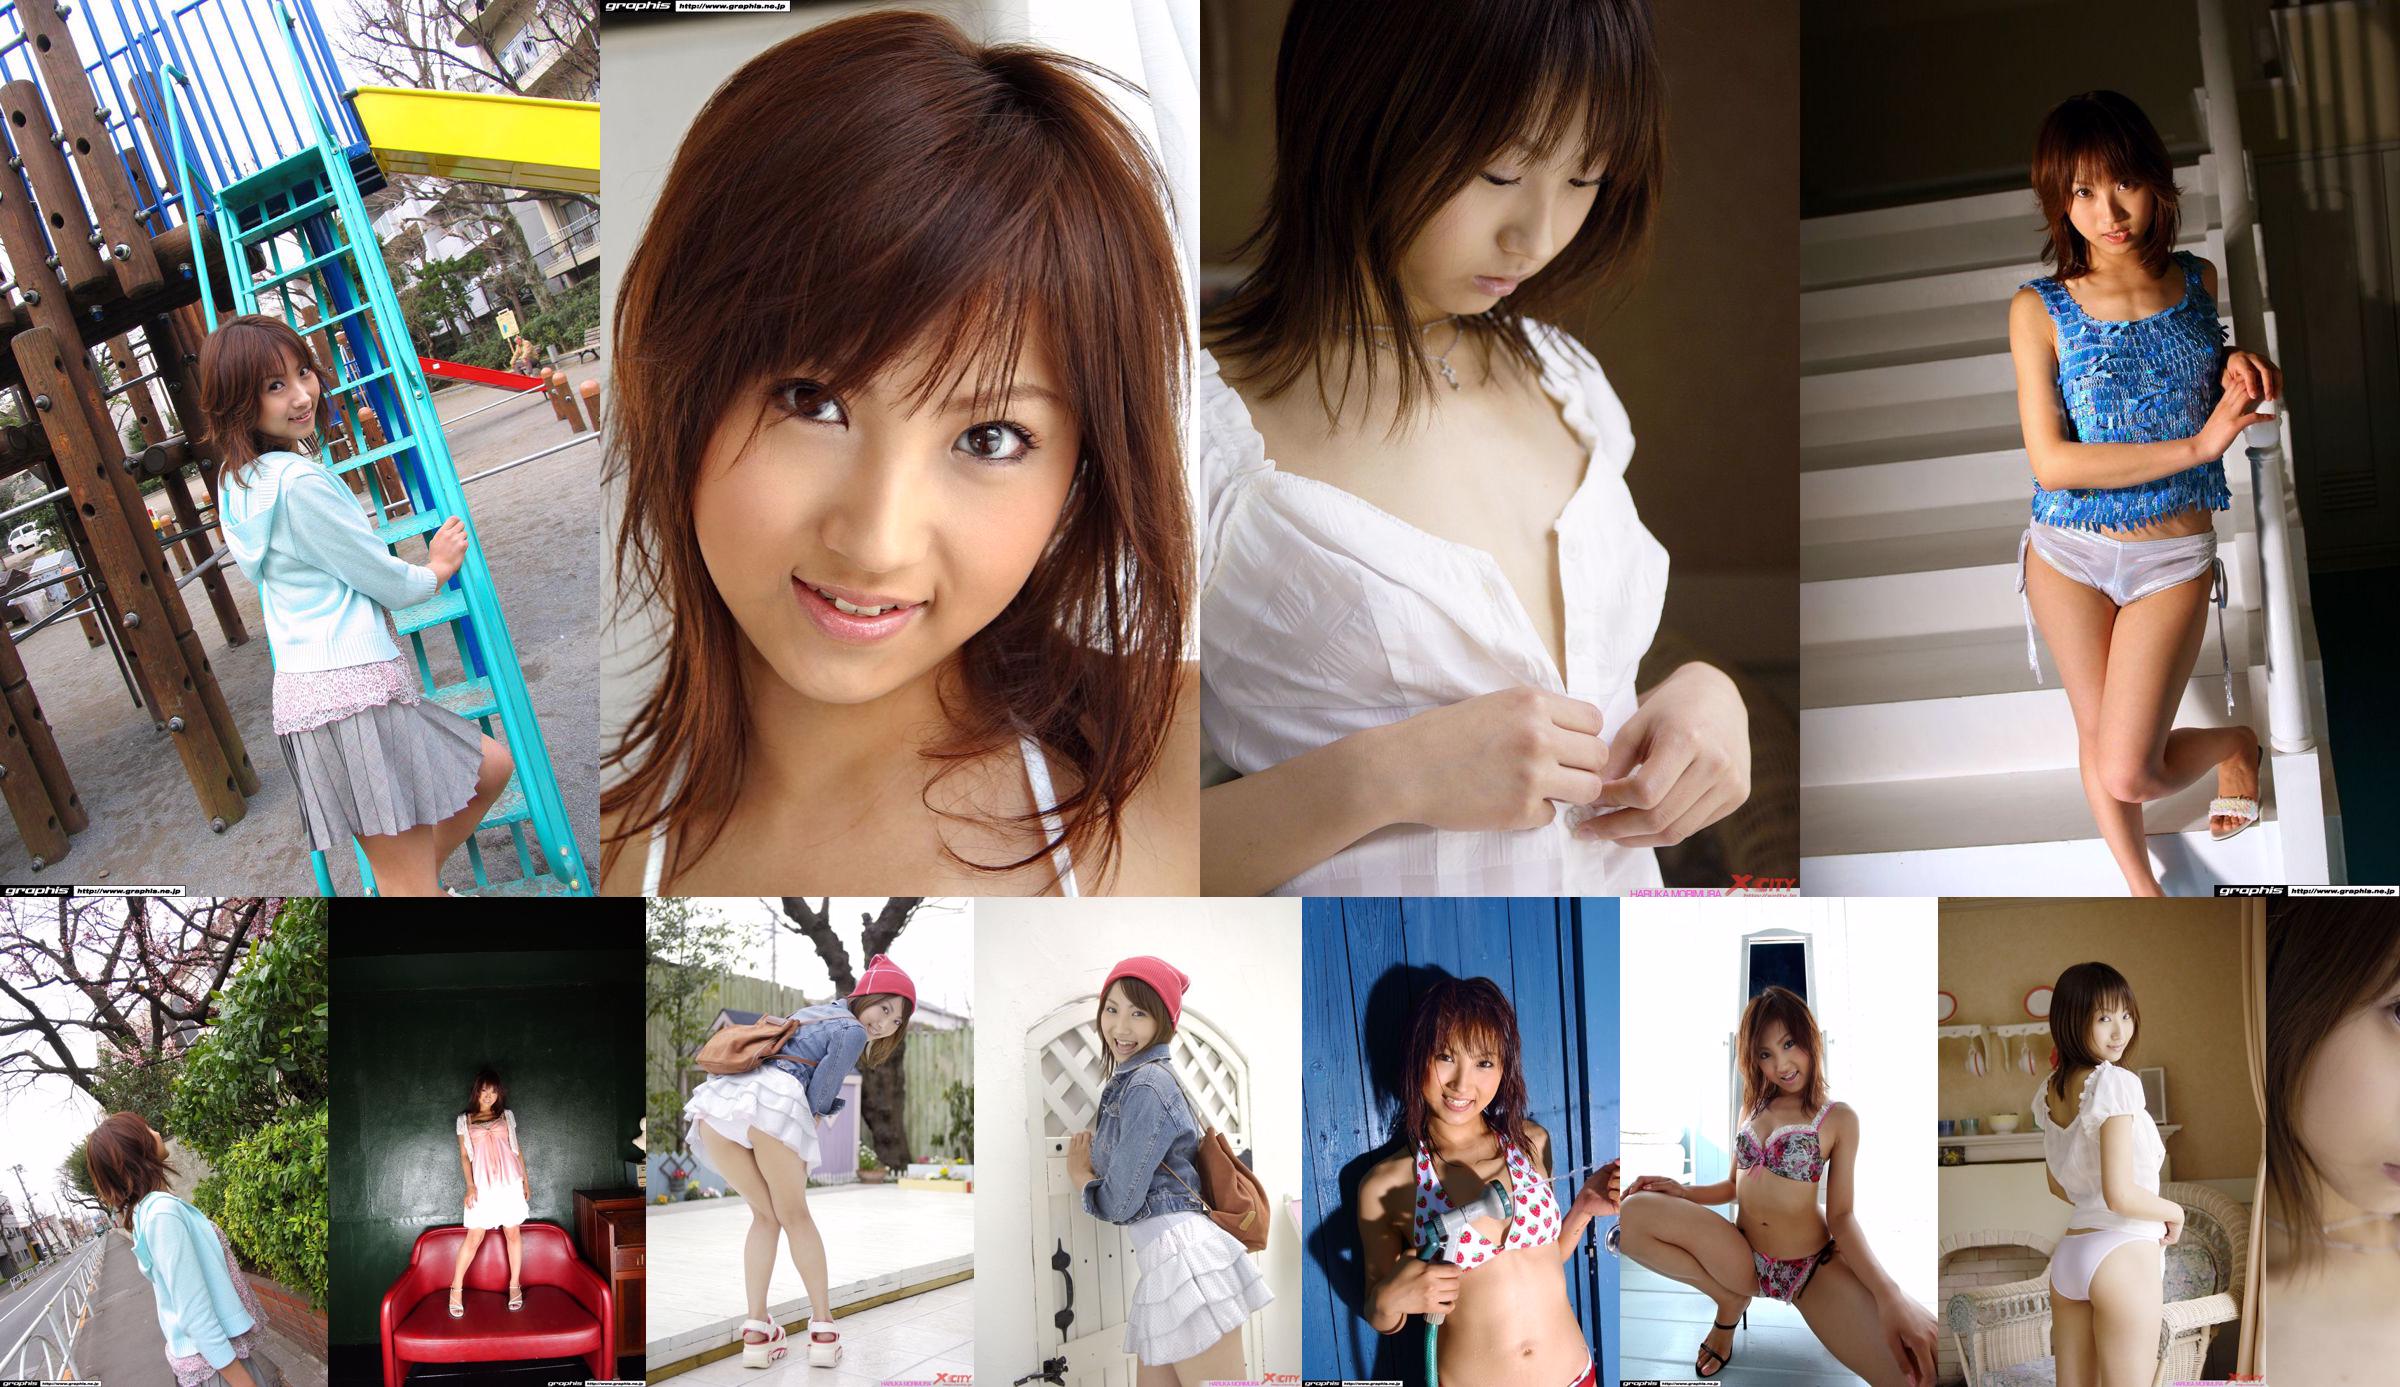 [X-City] WEB No.012 Haruka Morimura / Morimura Haruka "Morning Girl" No.86b701 Halaman 11